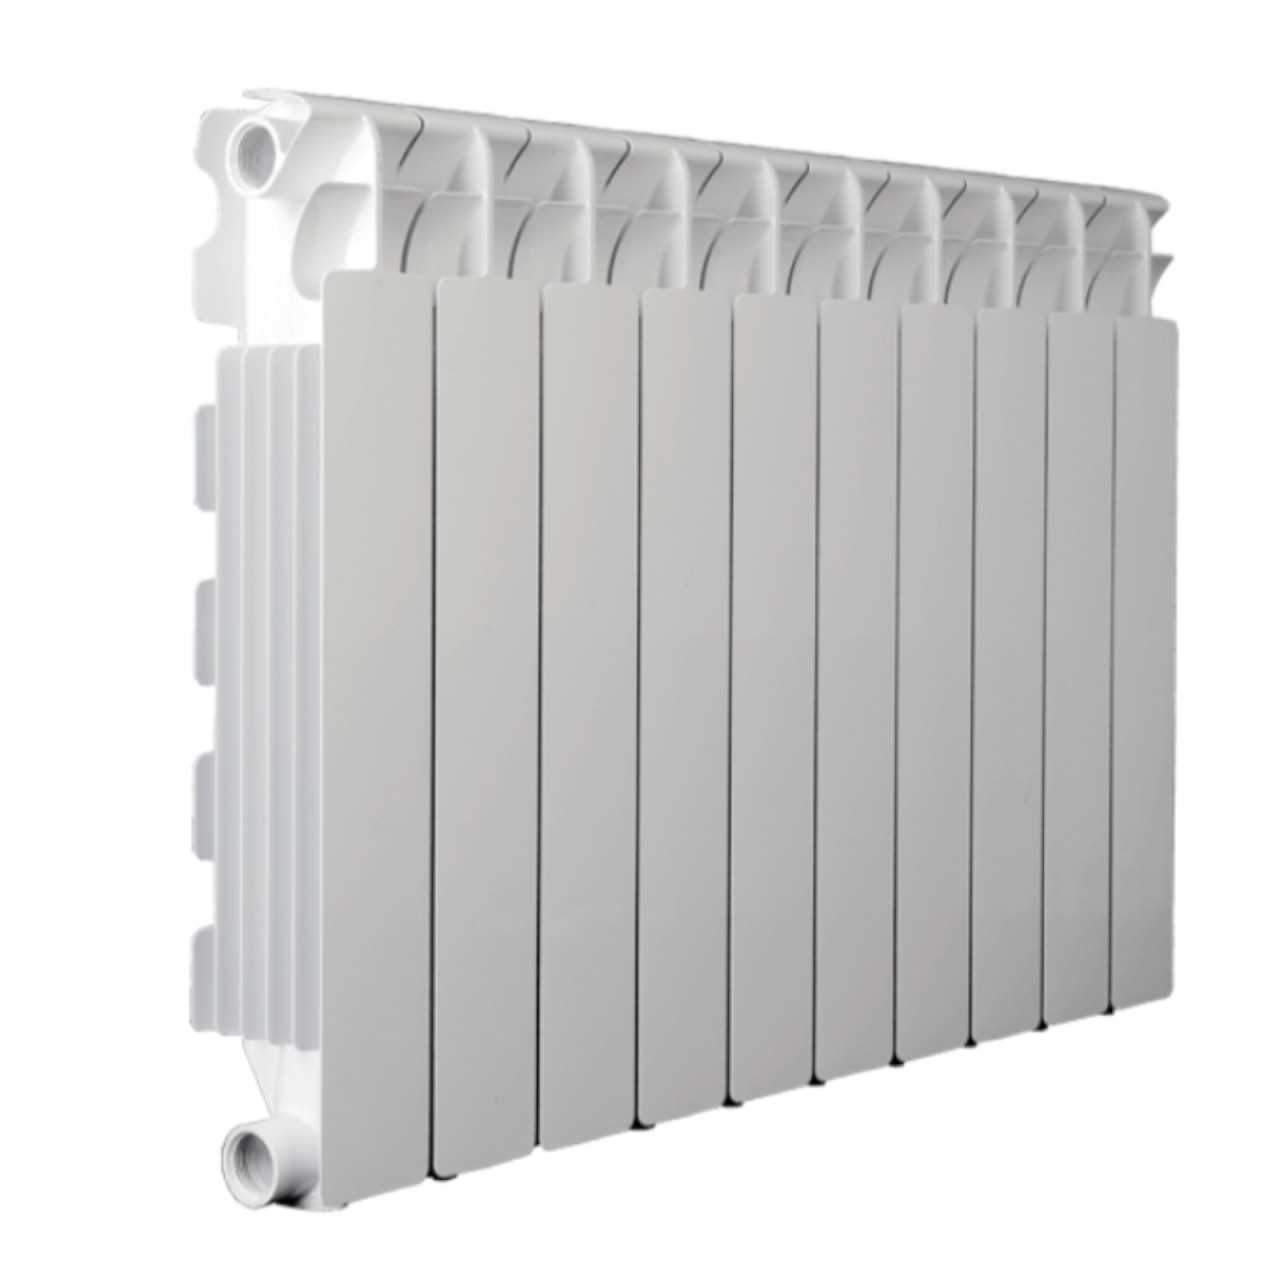 Radiatore fondital calidor s4 in alluminio bianco h. 88 cm